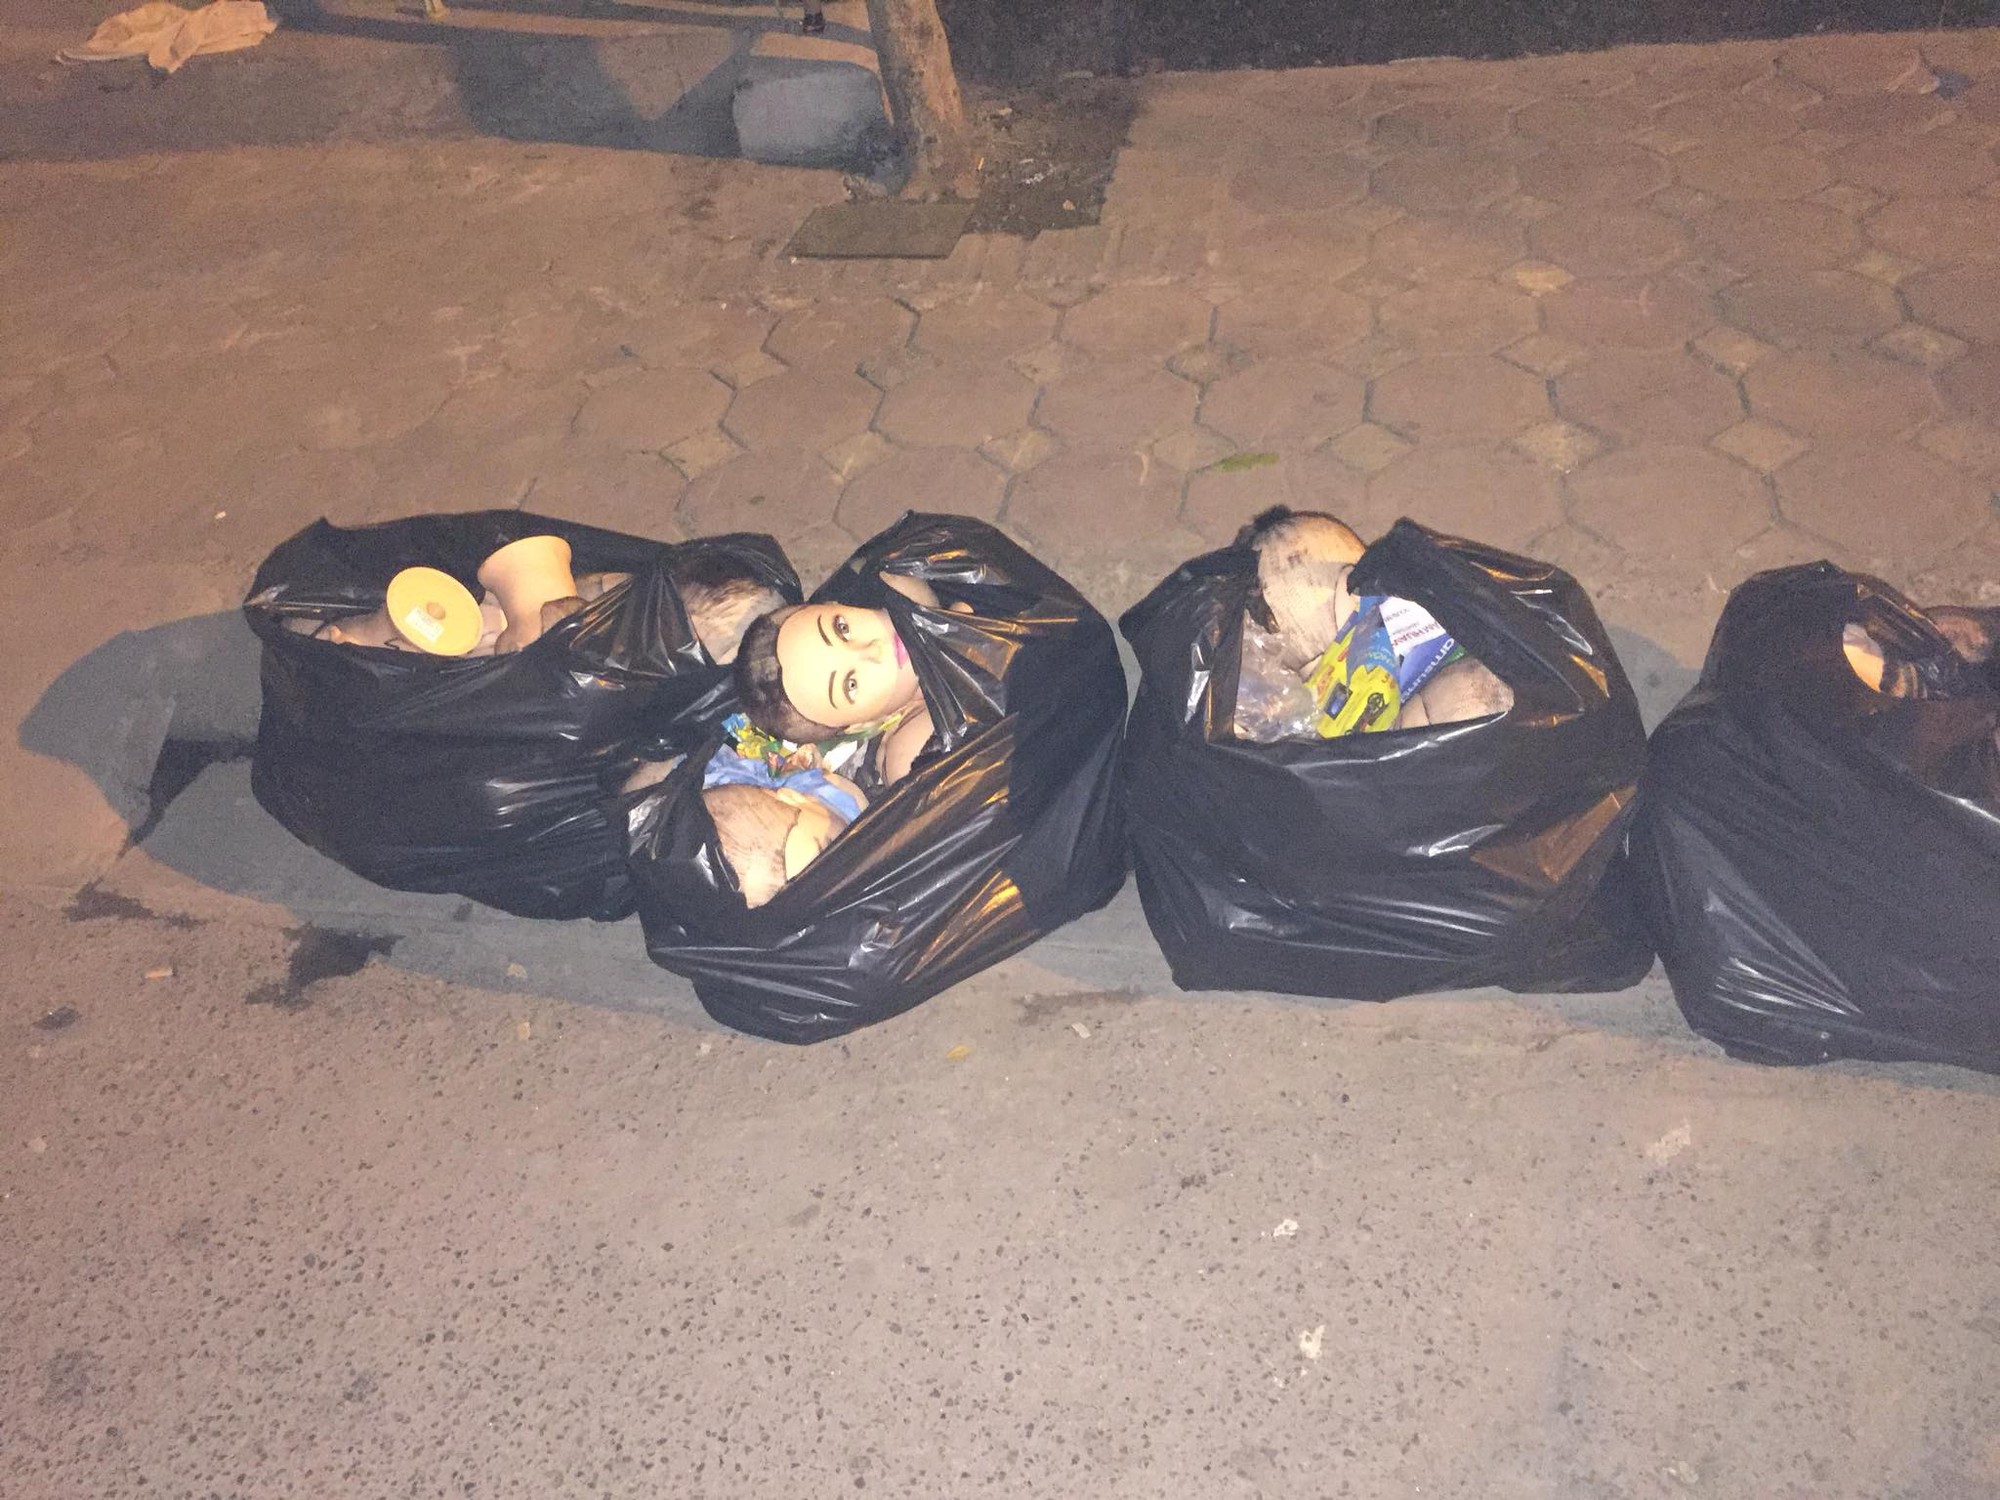 Thanh niên chăm chỉ đi đổ rác đêm, vừa đến nơi thì chạy mất dép vì nhìn thấy 4 chiếc túi đen kinh dị - Ảnh 2.